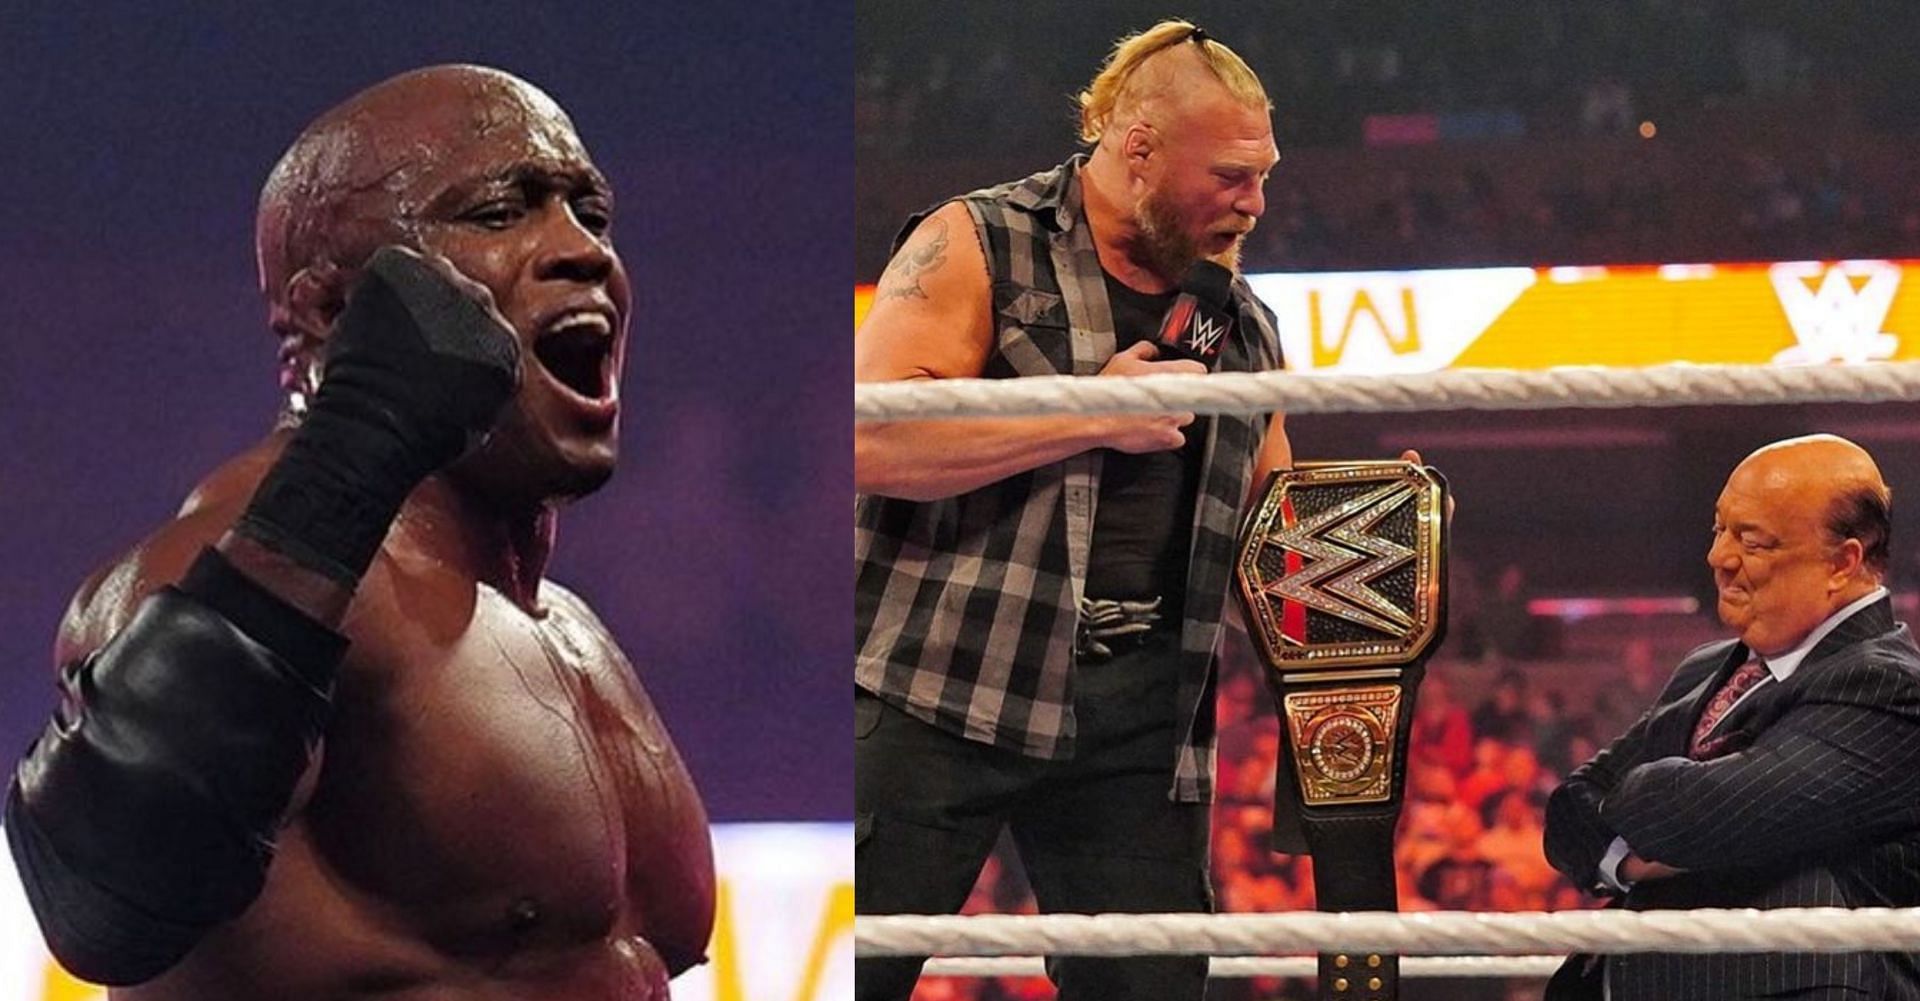 WWE Raw को लेकर सभी की प्रतिक्रियाएं अलग रही 